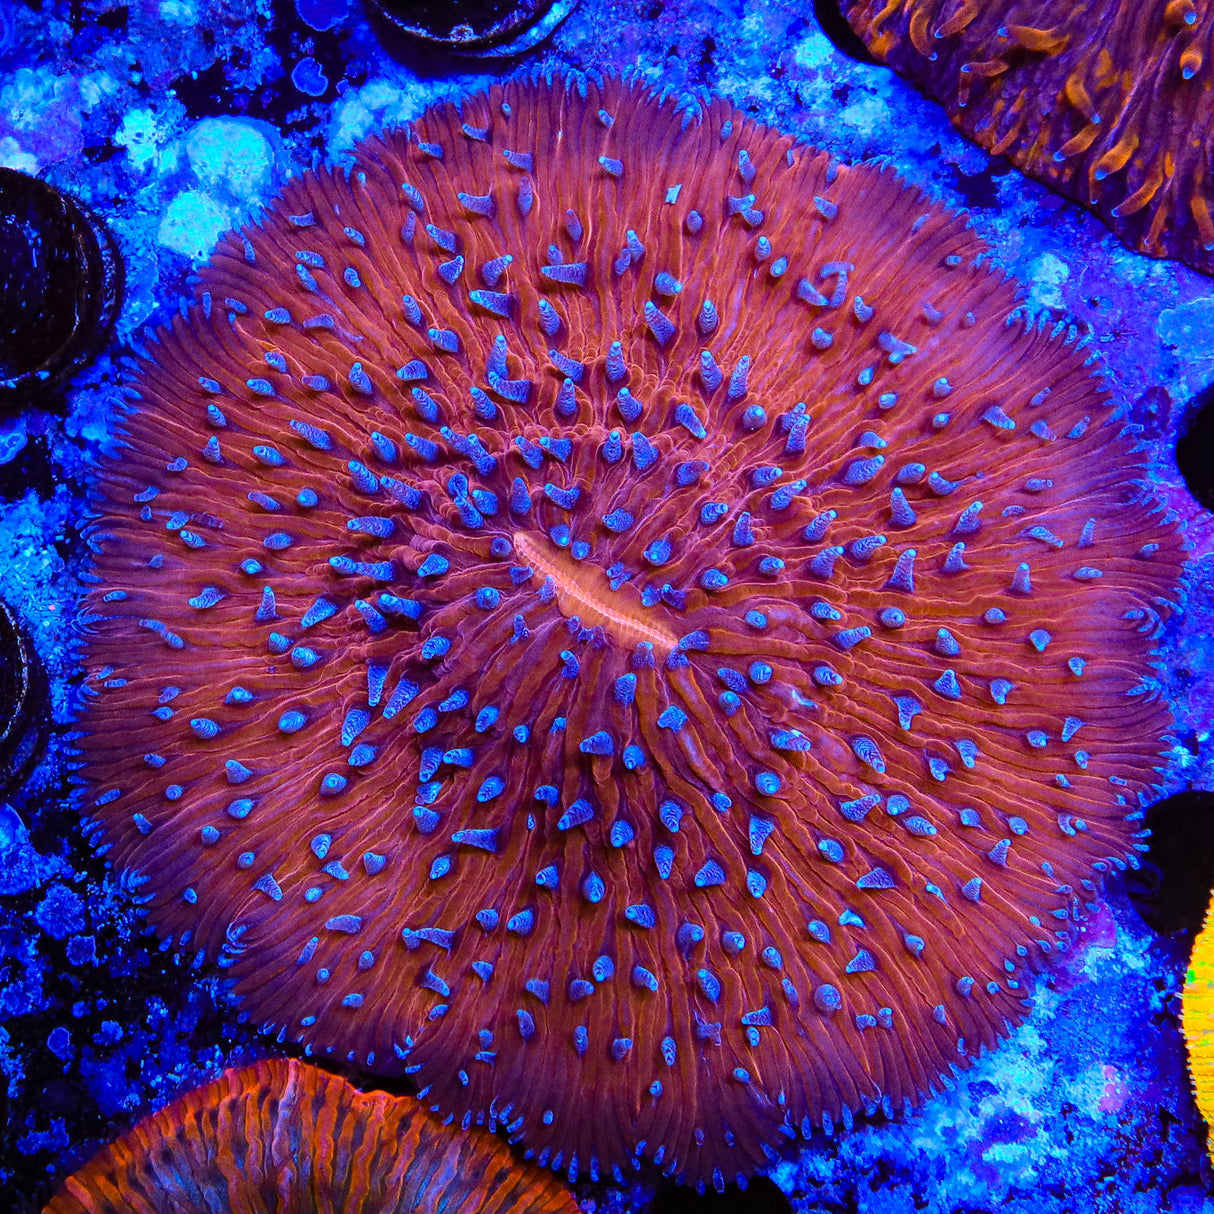 Rainbow Plate Coral - Top Shelf Aquatics